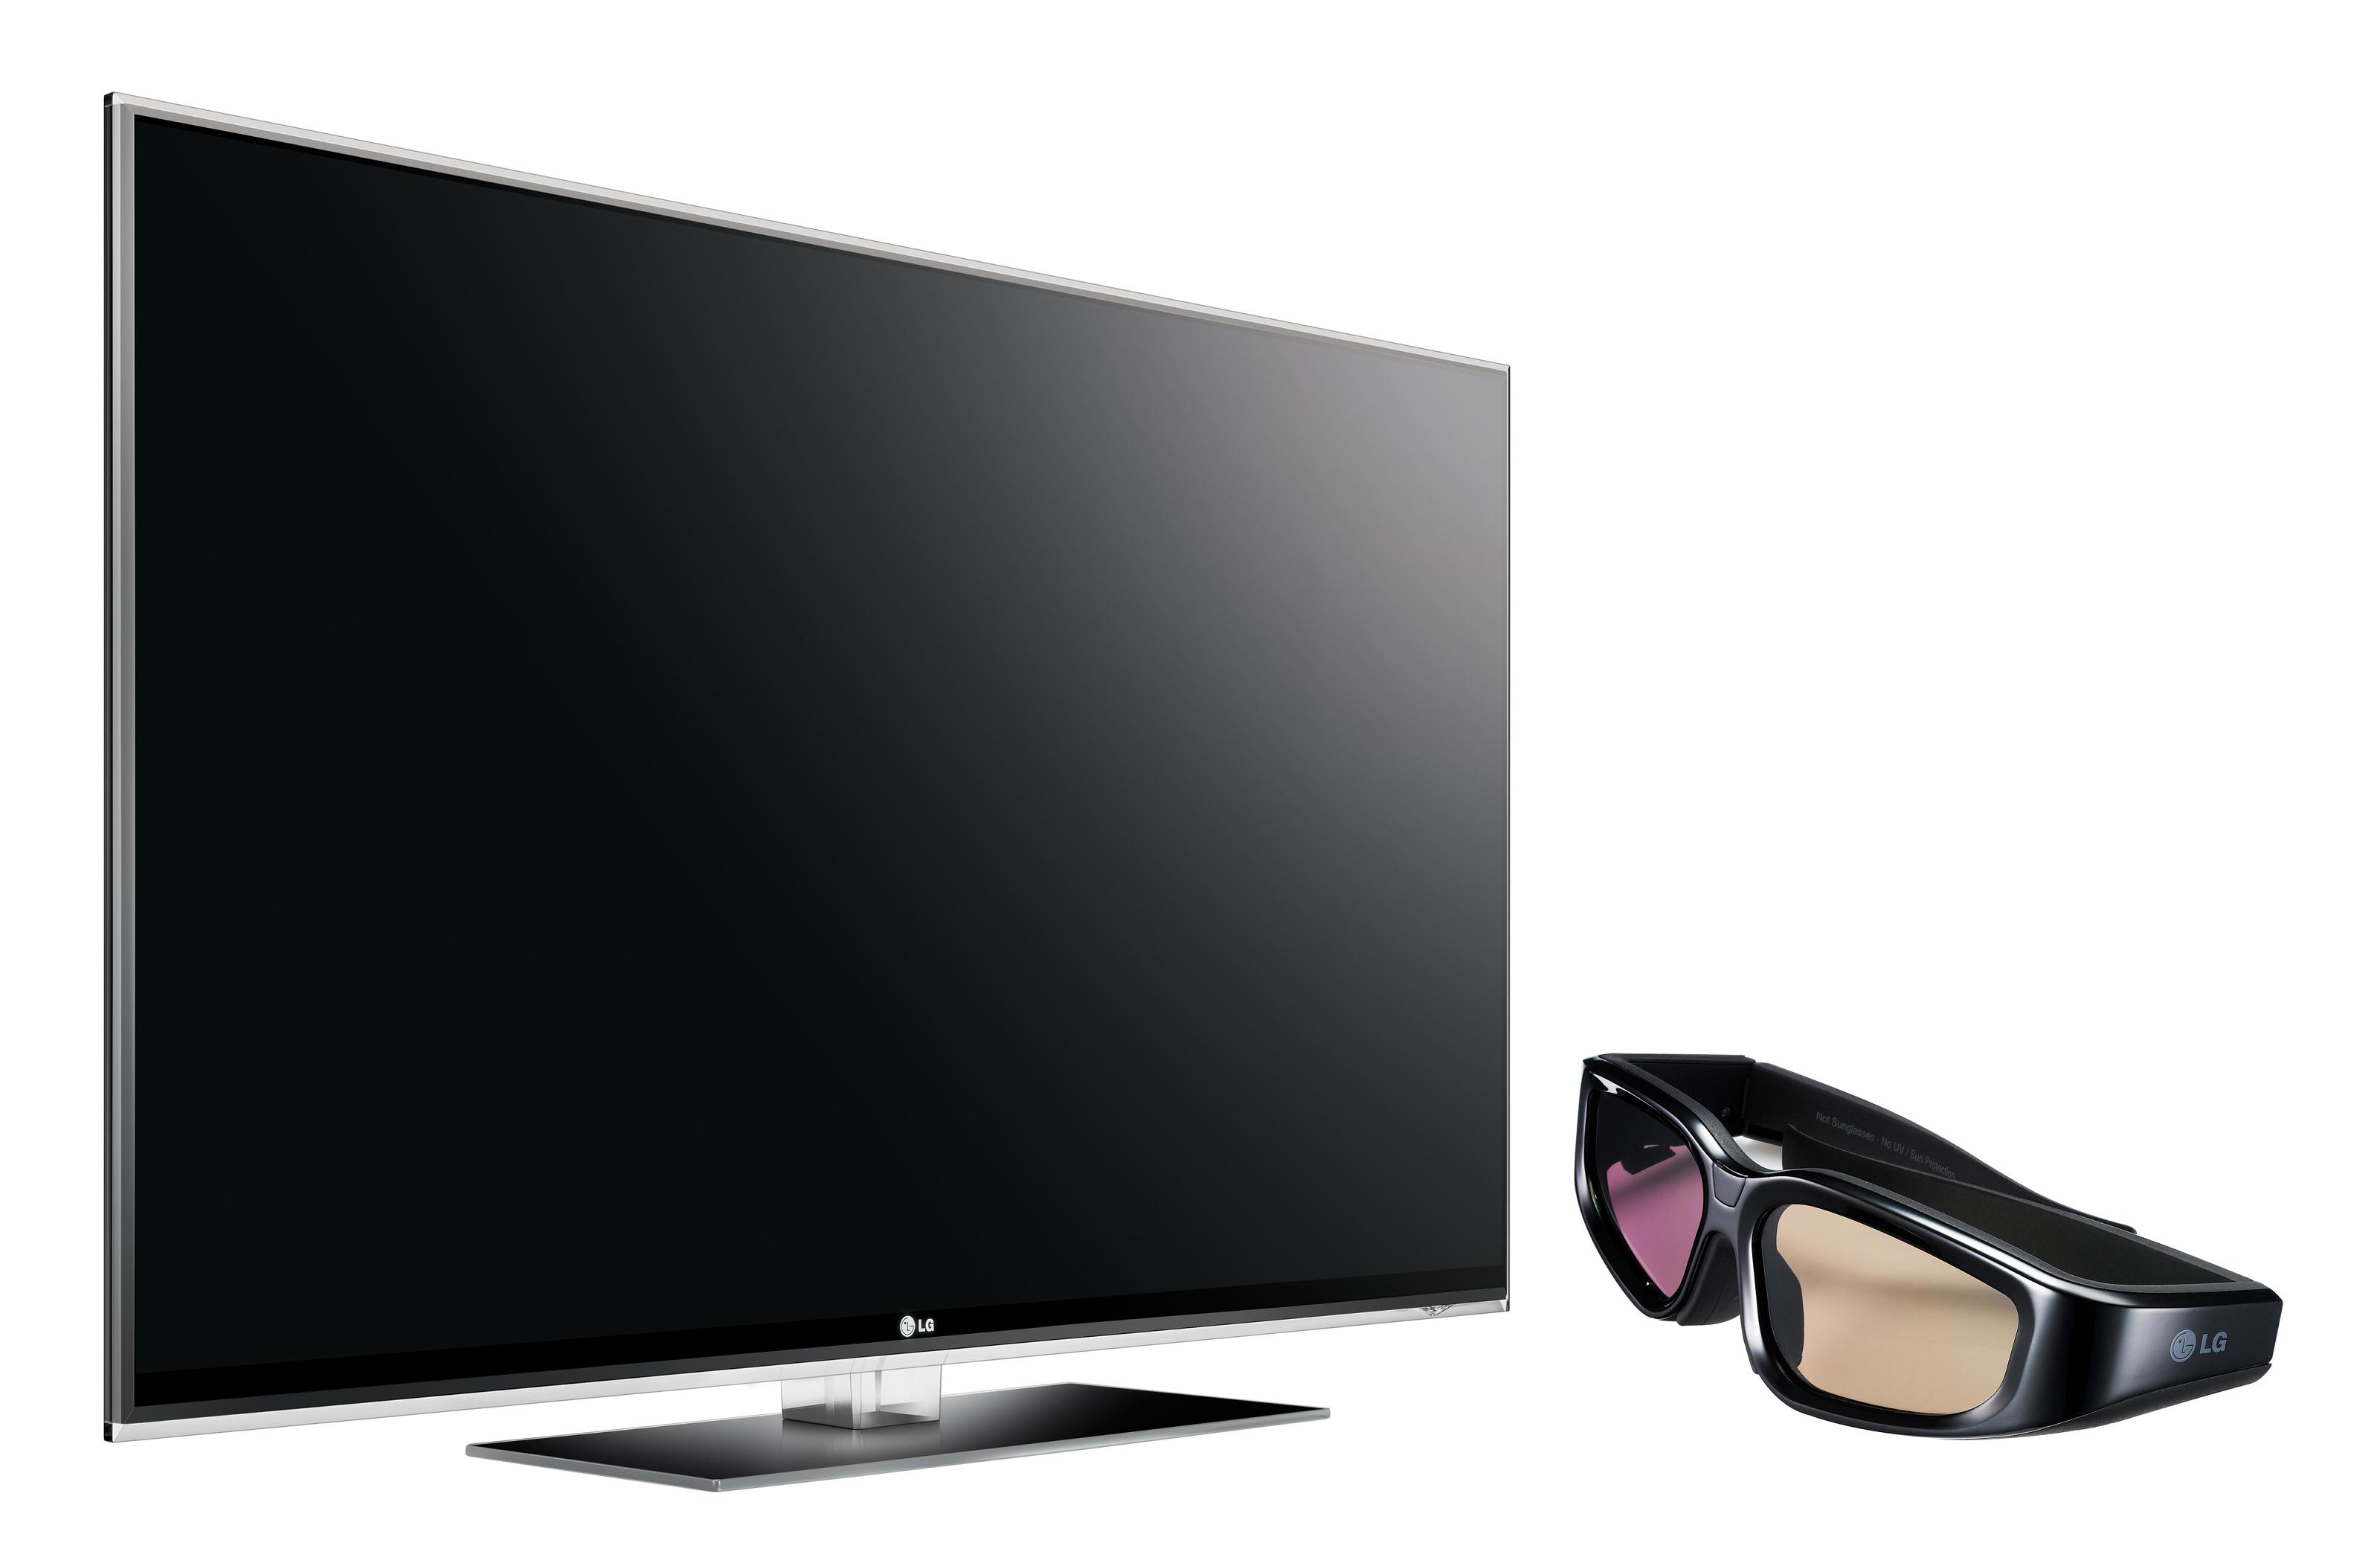 Телевизор lg d. LG 47lx9500. Телевизор LG 47lx9500. LG 55 lx9500 телевизор. Телевизор LG LCD led 3d.